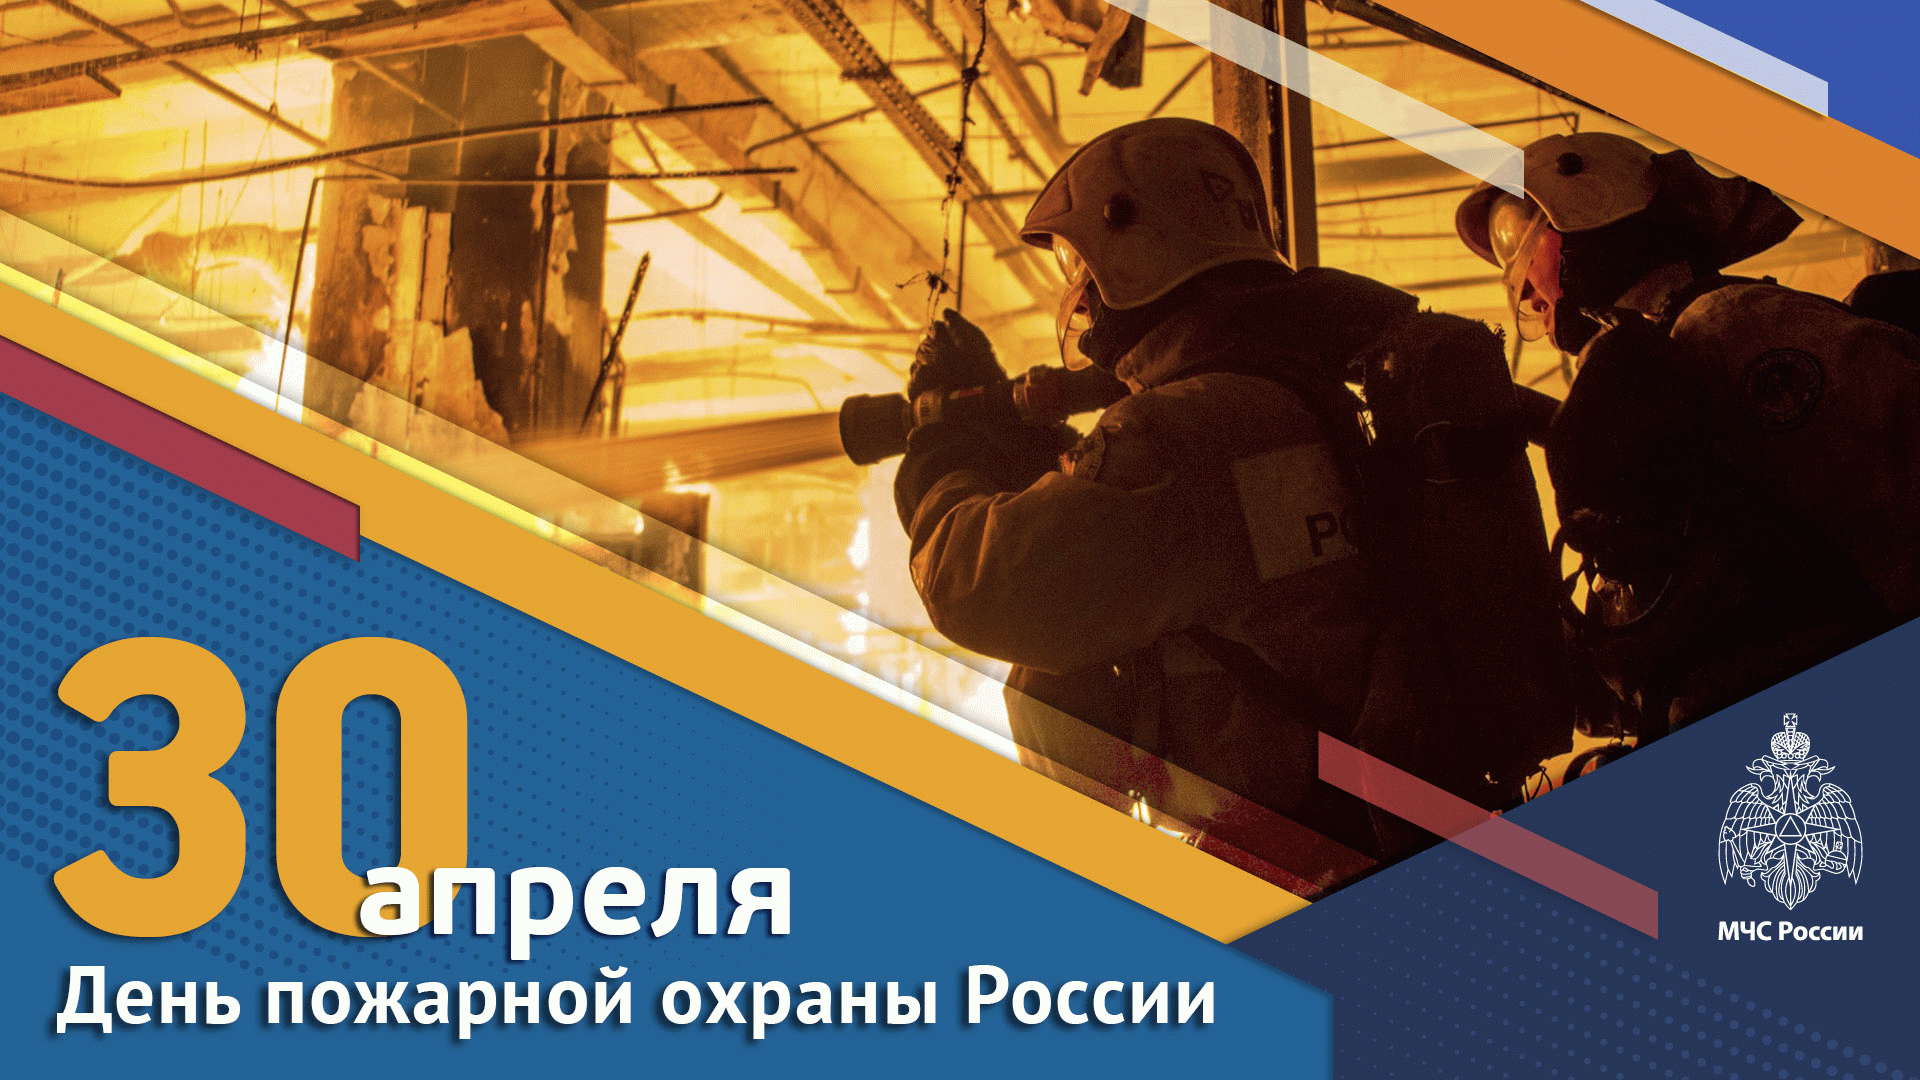 Акция ко Дню пожарной охраны России коллег из digital.sfpe